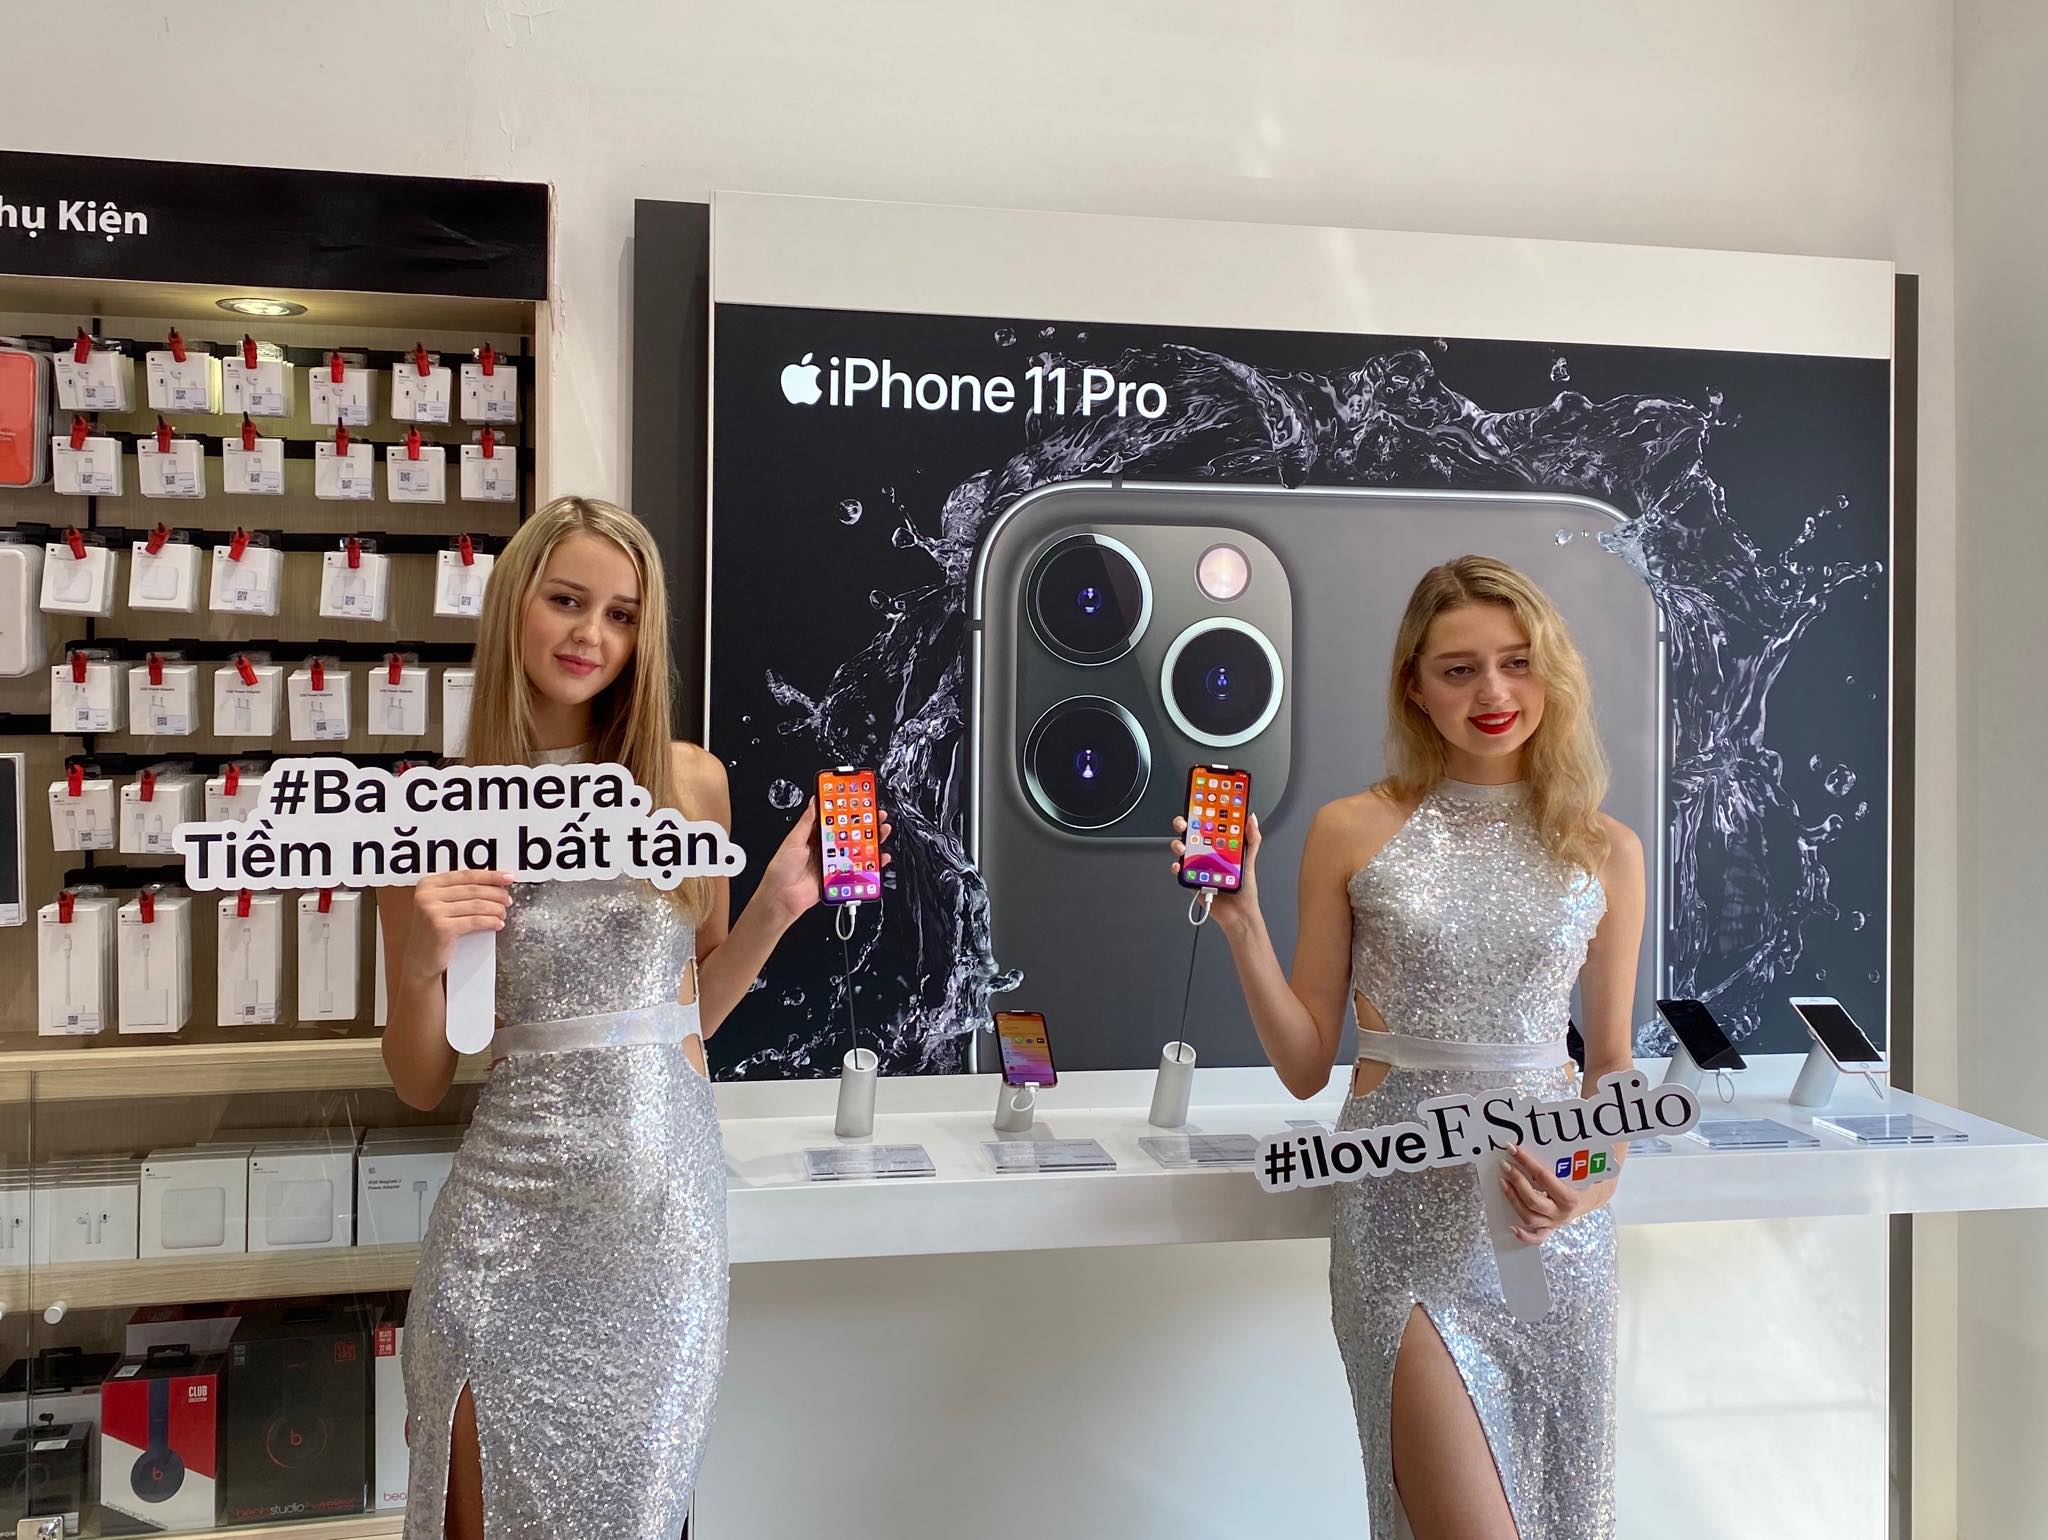 FPT Shop lên kệ bộ 3 iPhone 11 với chương trình Thu cũ đổi mới, trả góp từ 980,000 đồng/tháng